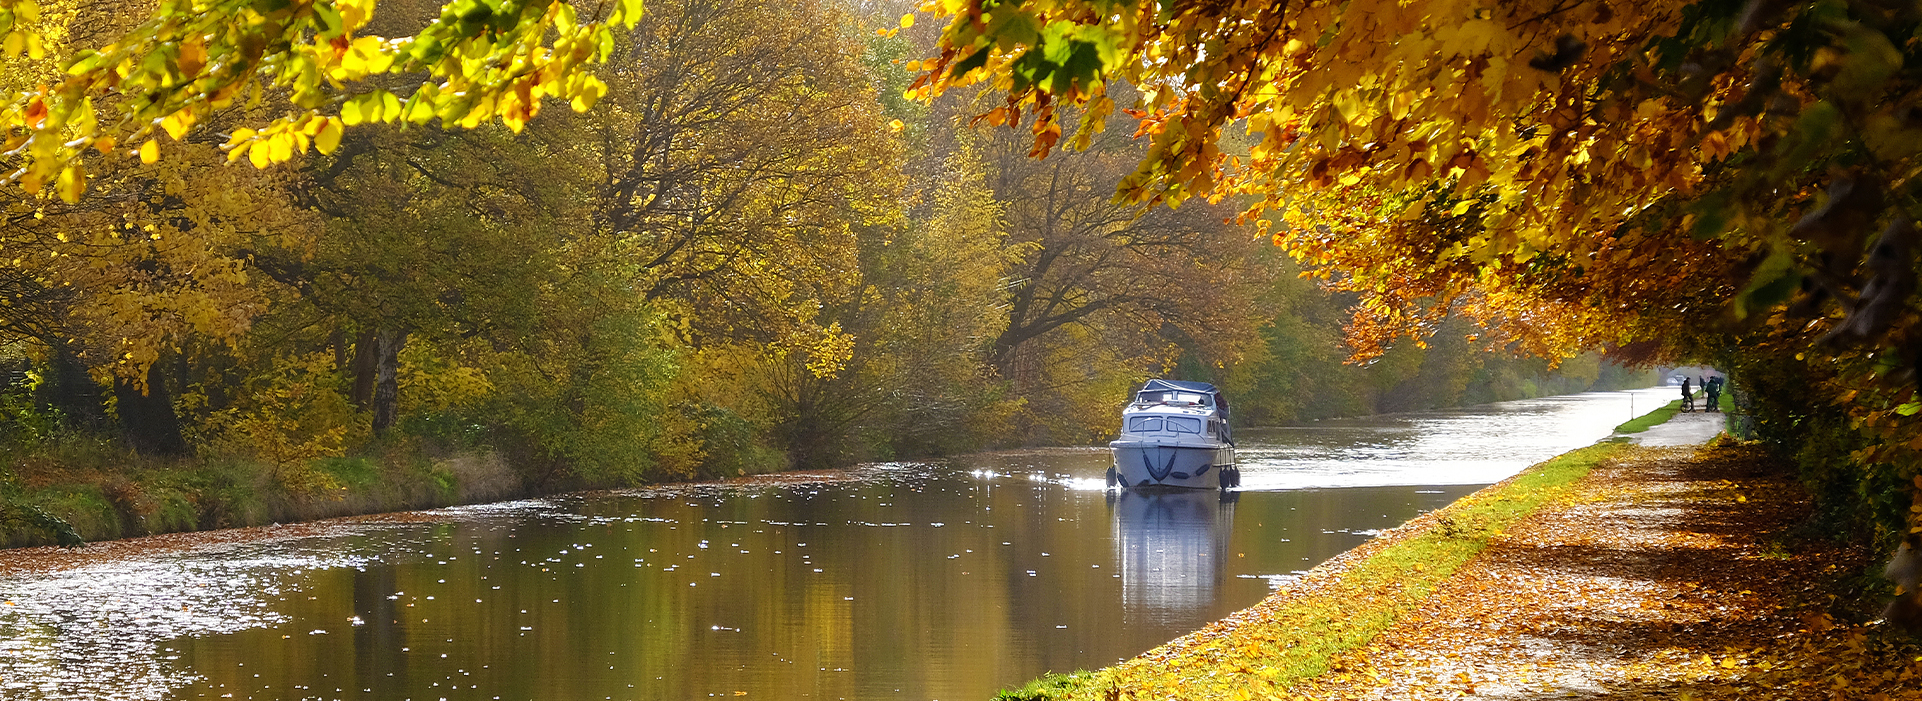 Norfolk Broads Boat Hire – Autumn Breaks on the Norfolk Broads